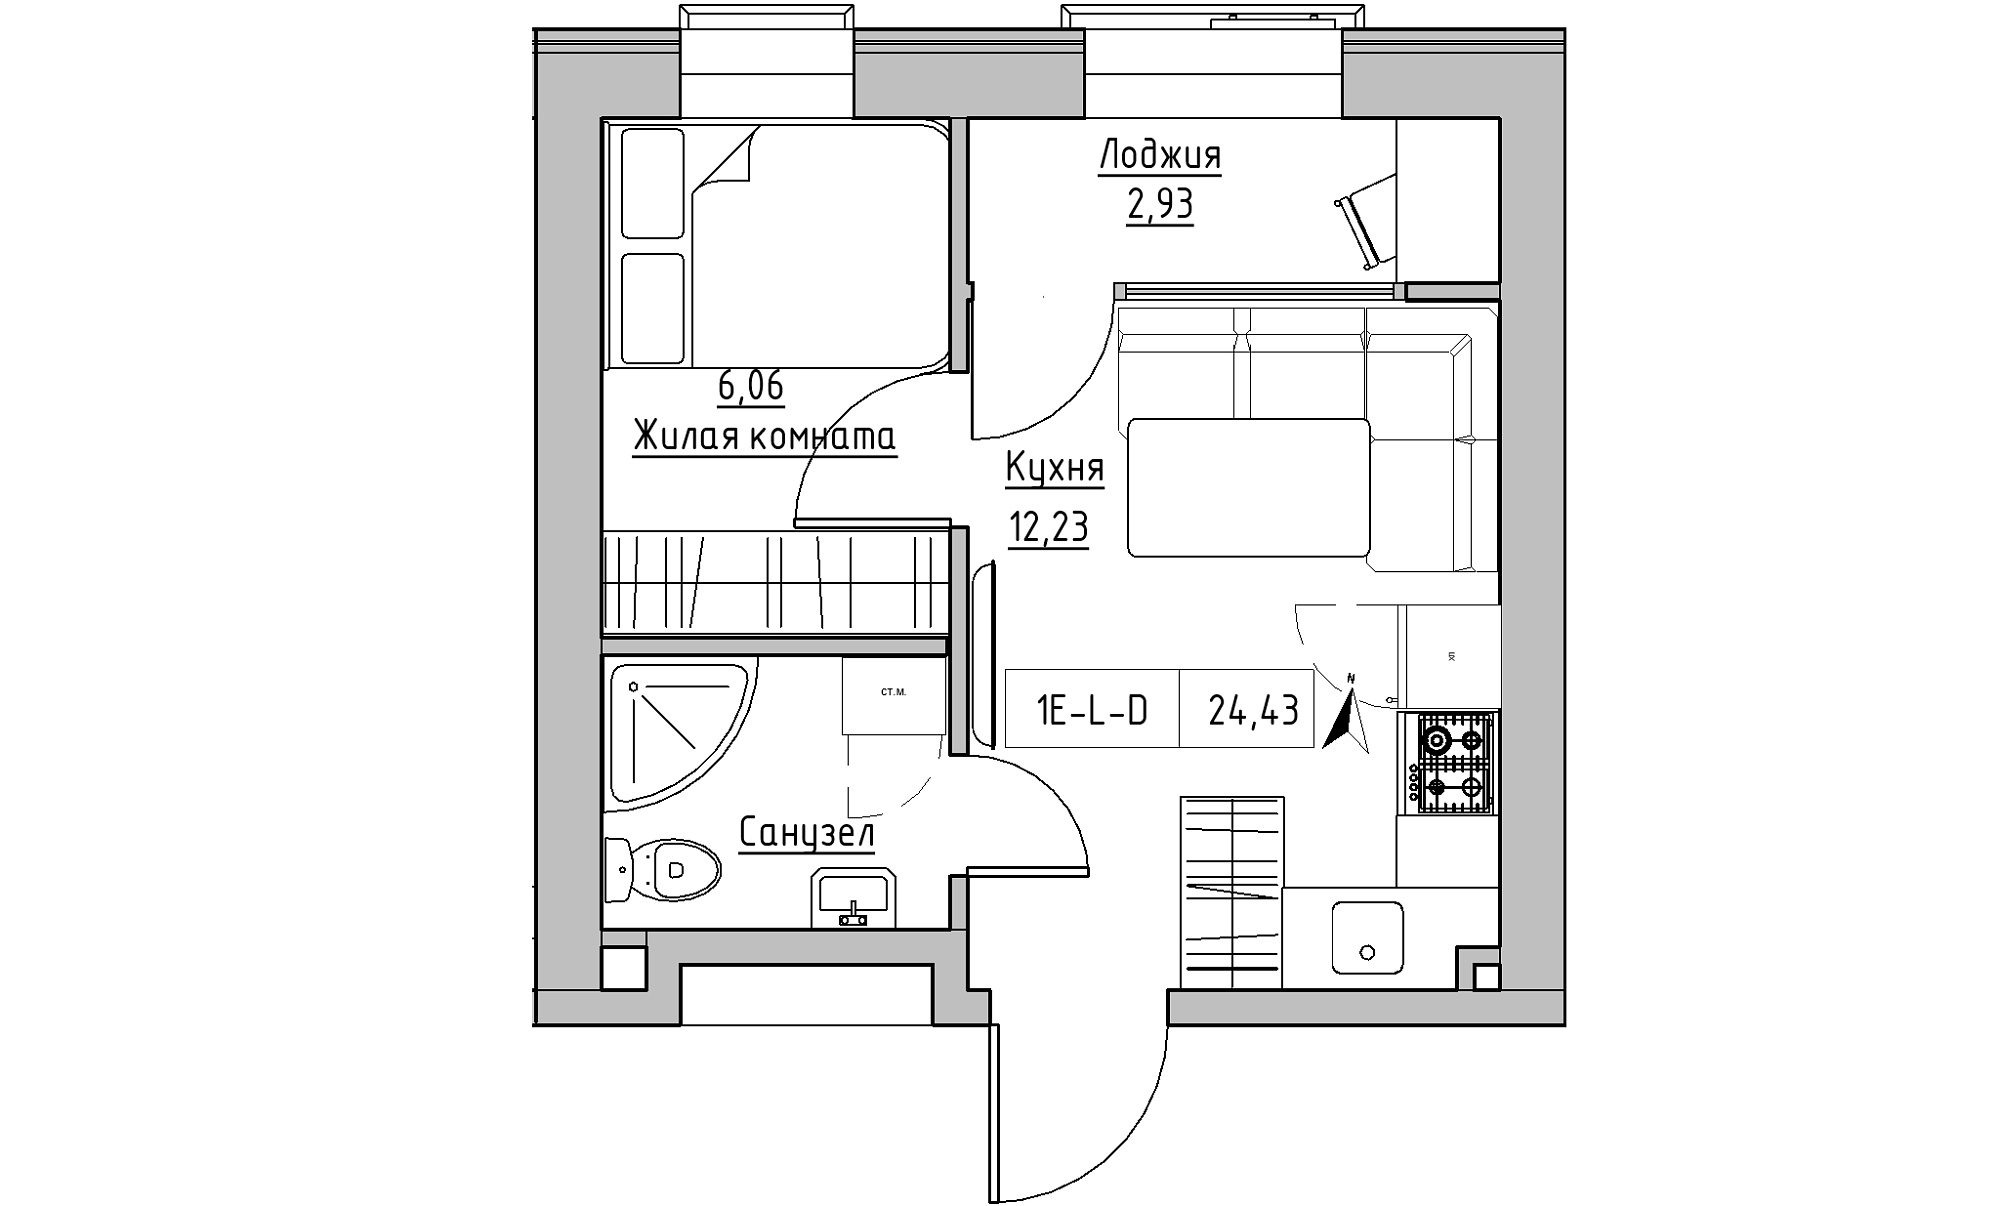 Планування 1-к квартира площею 24.43м2, KS-023-04/0016.